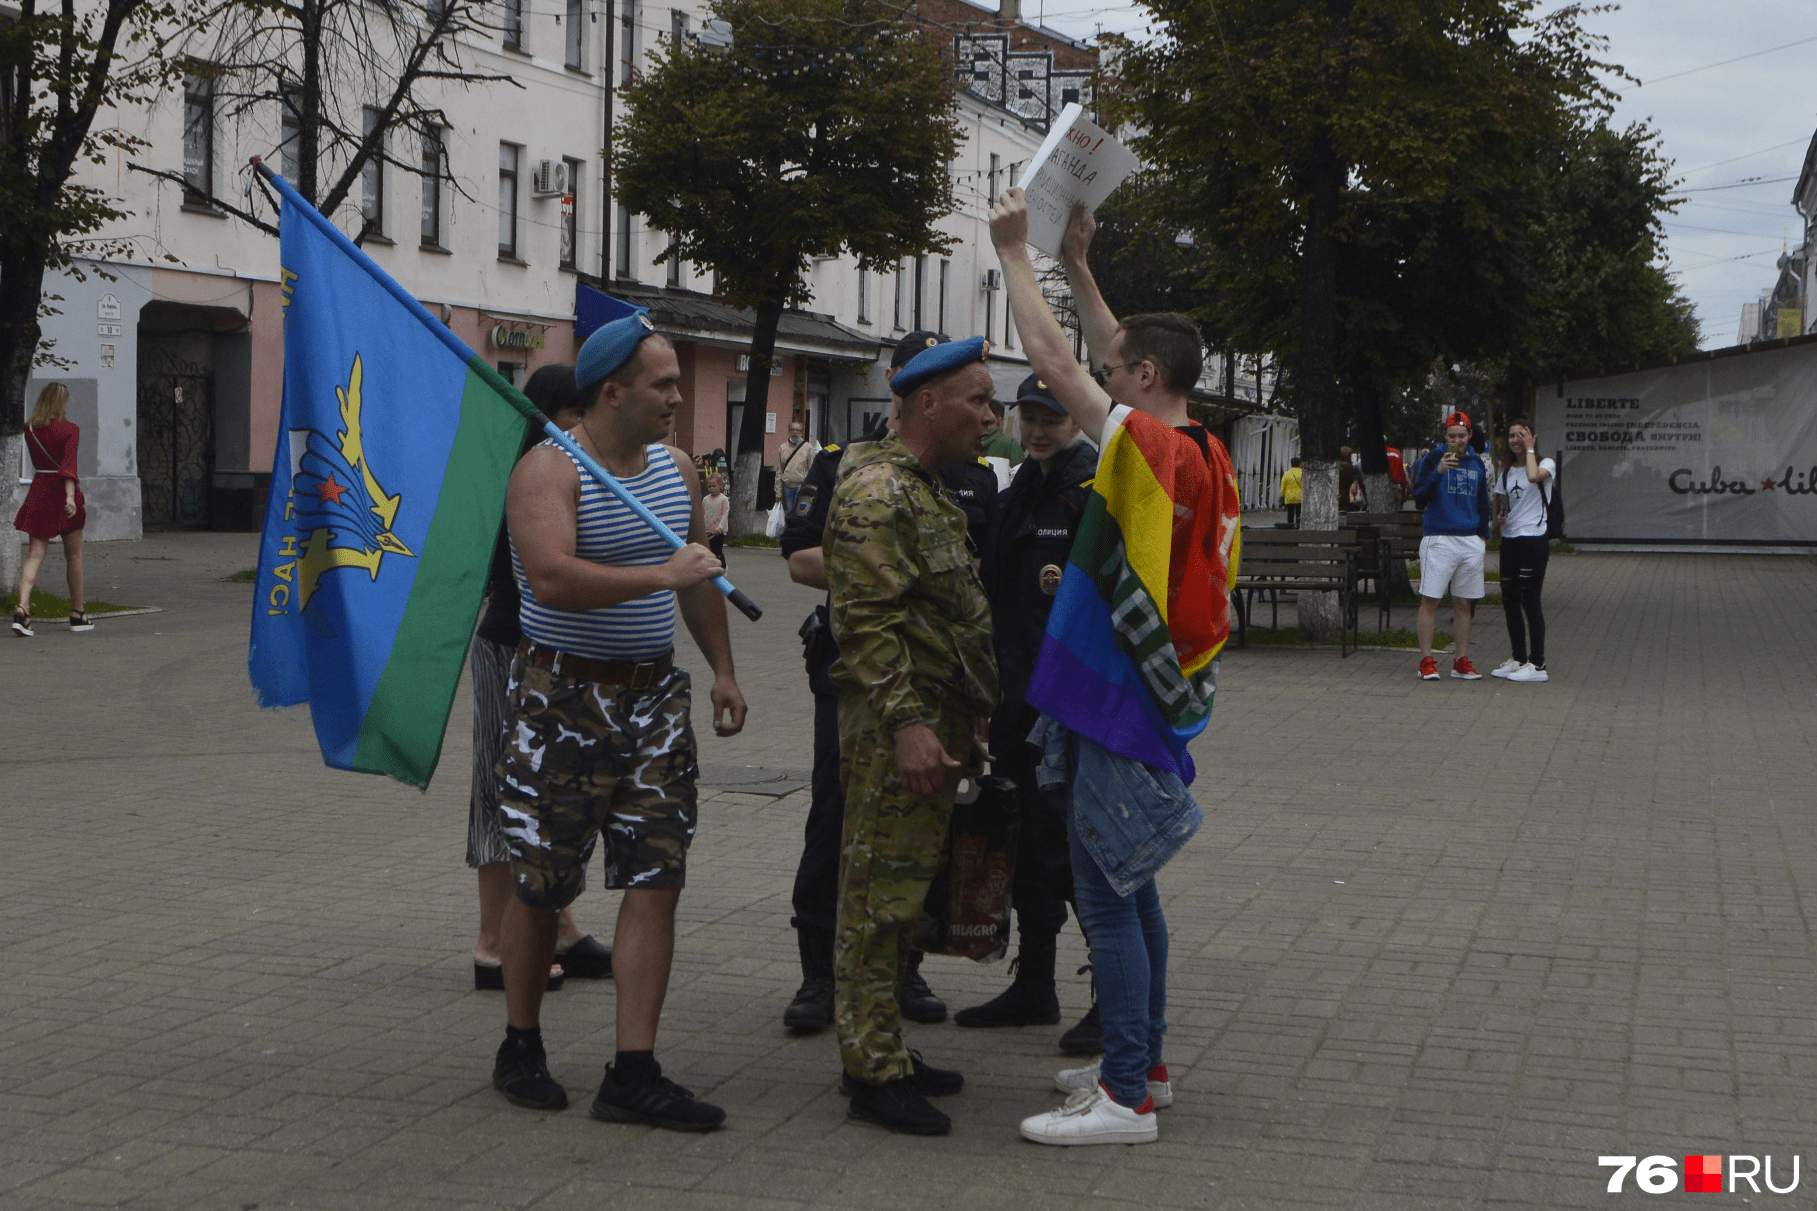 В центре Ярославля вэдэвэшники толпой набросились на гей-активиста: фото и  видео | Происшествия, новости ЛГБТ - 2 августа 2020 - 76.ru